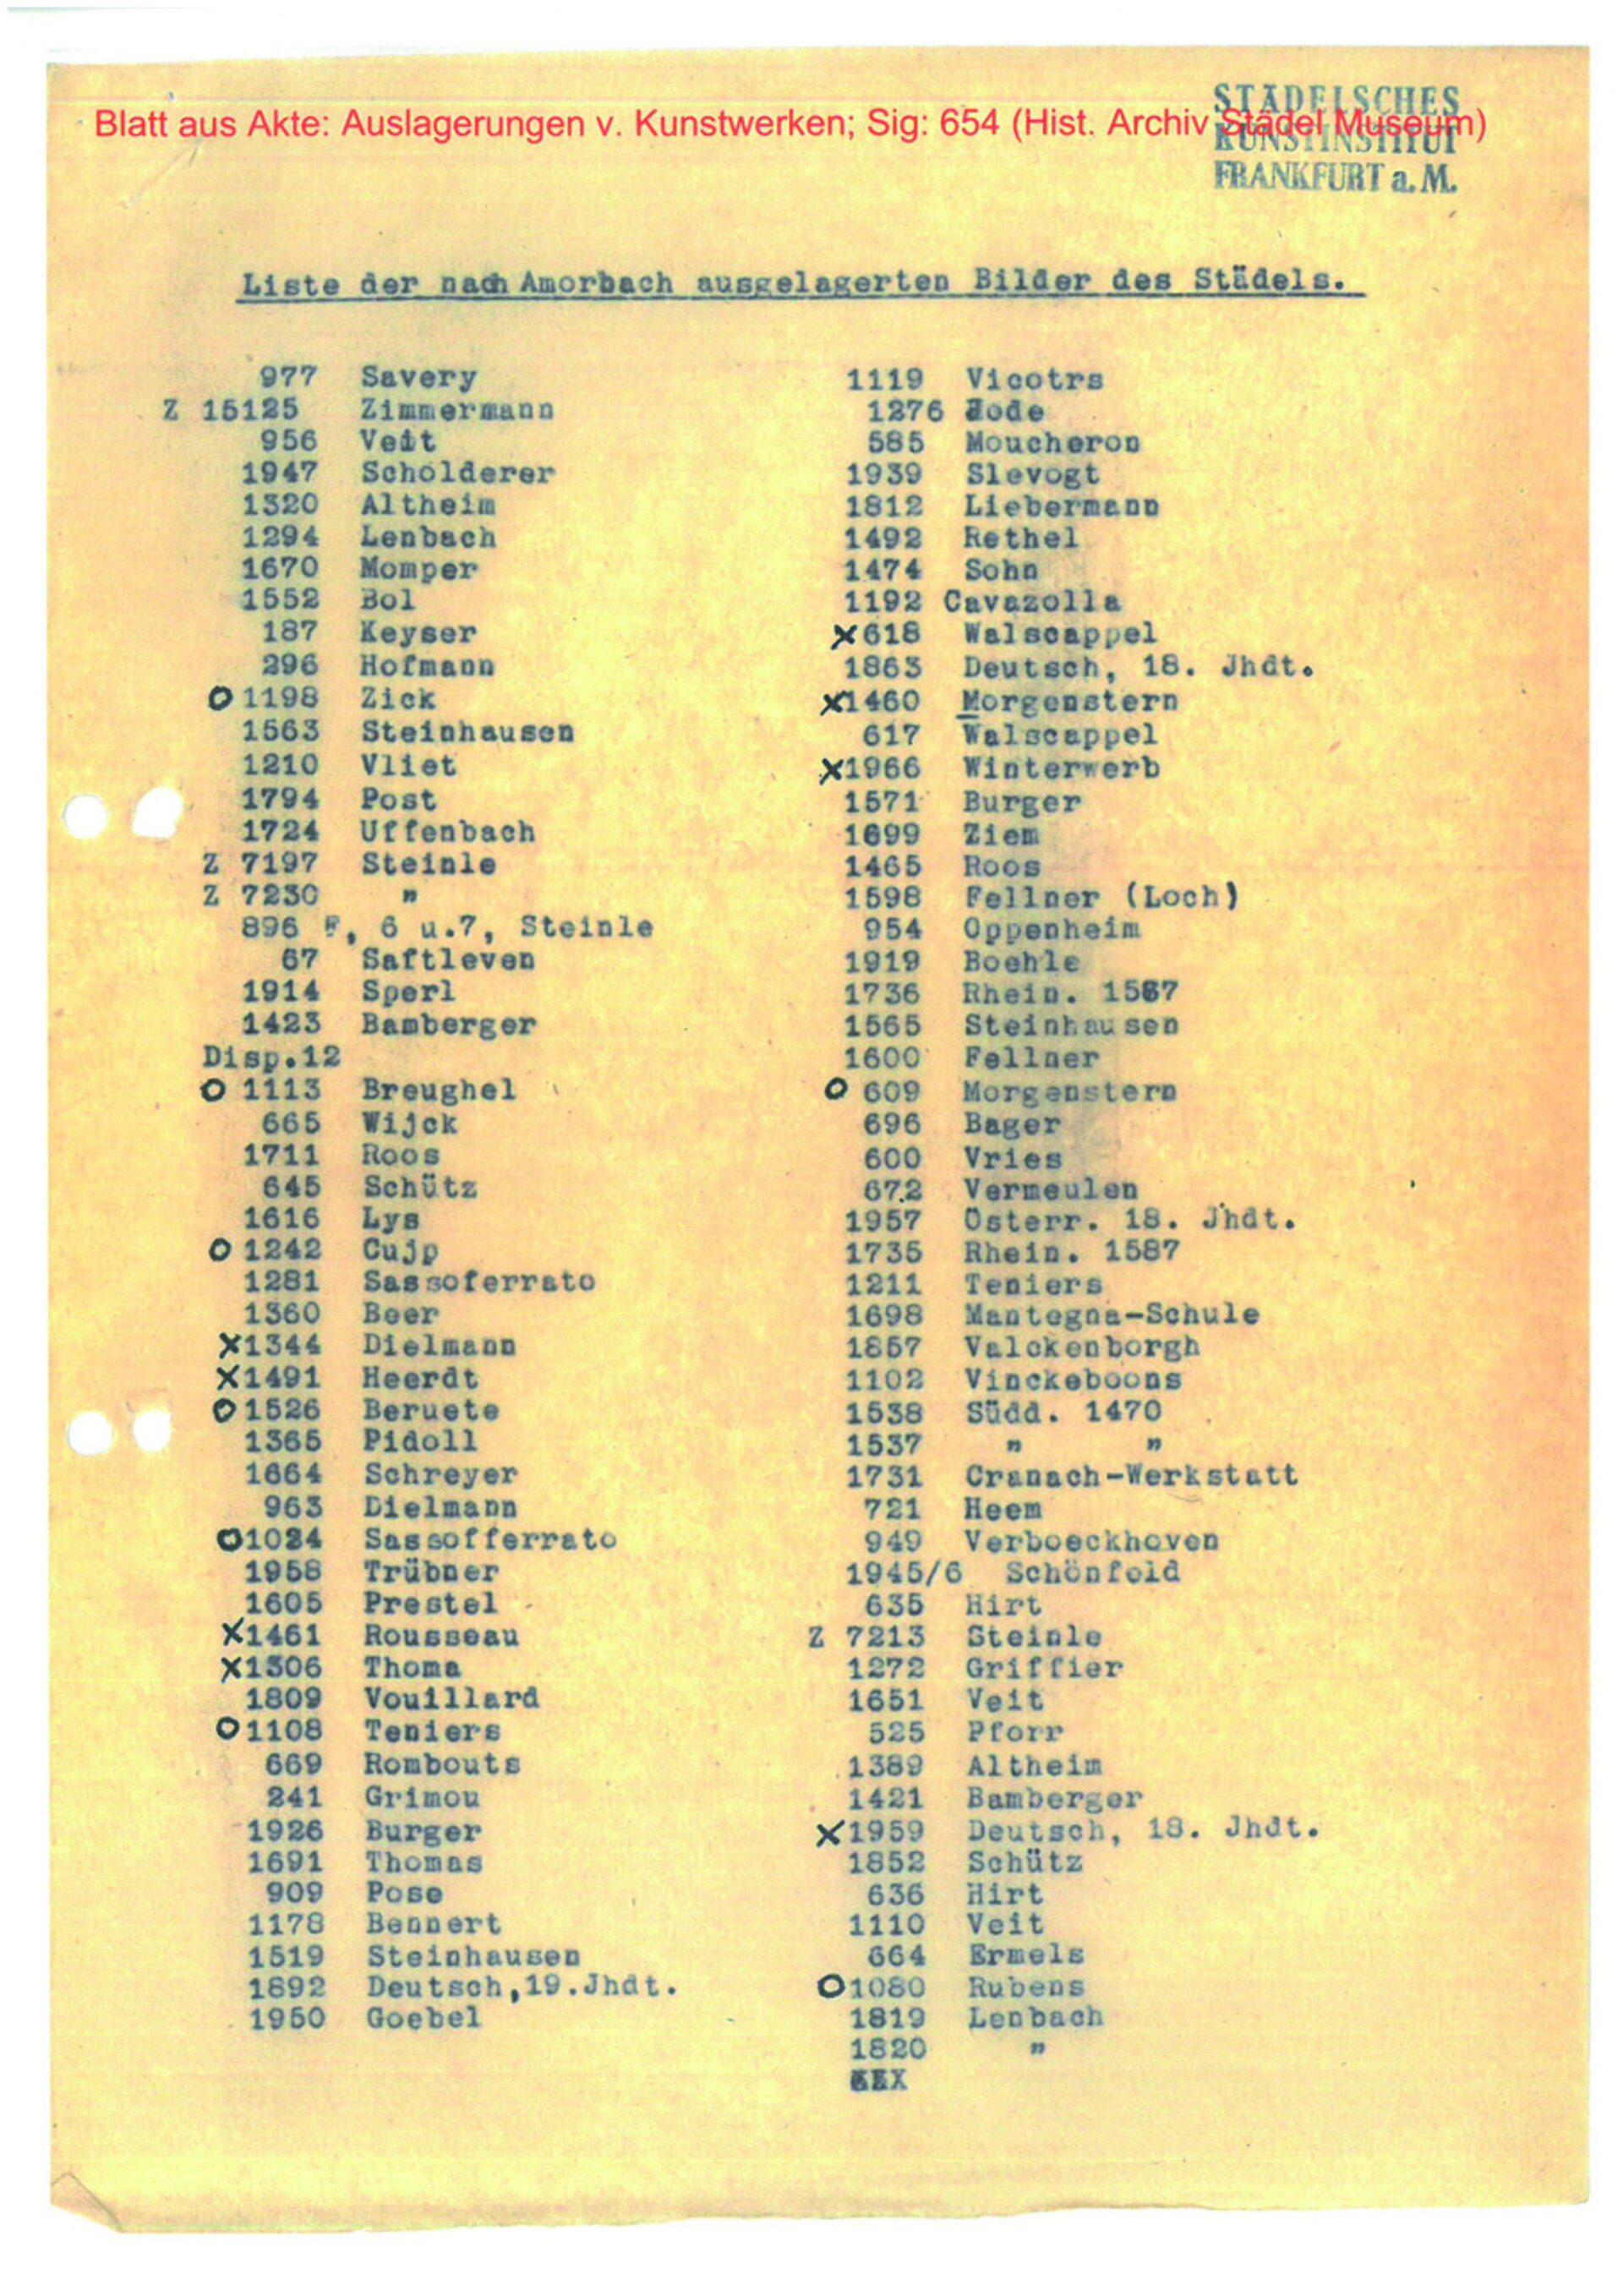 Abbildung 3_Liste der nach Amorbach ausgelagerten Bilder des Städel